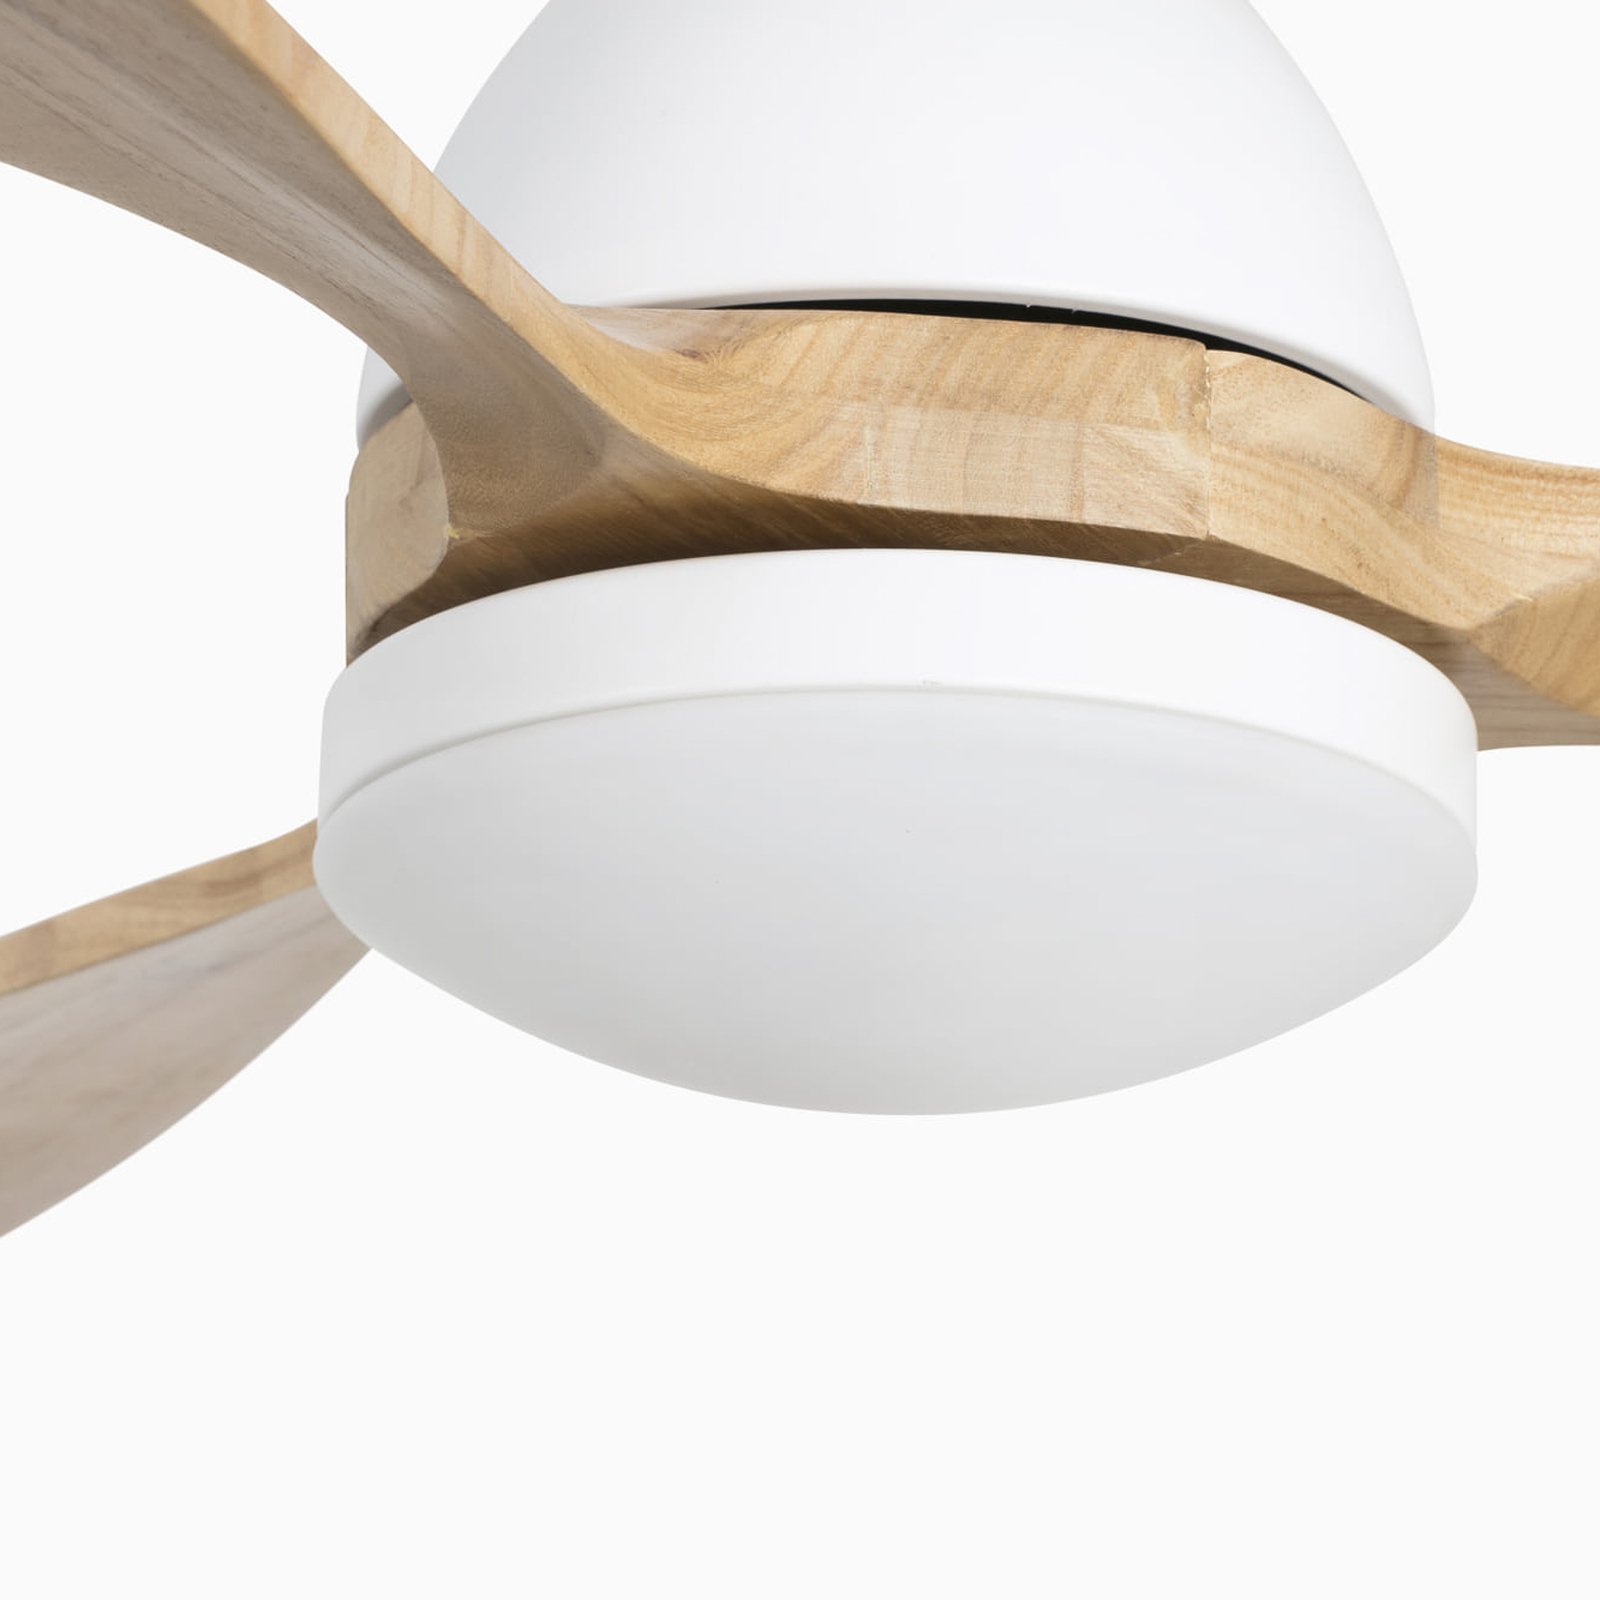 Poros ceiling fan, LED light white/light wood